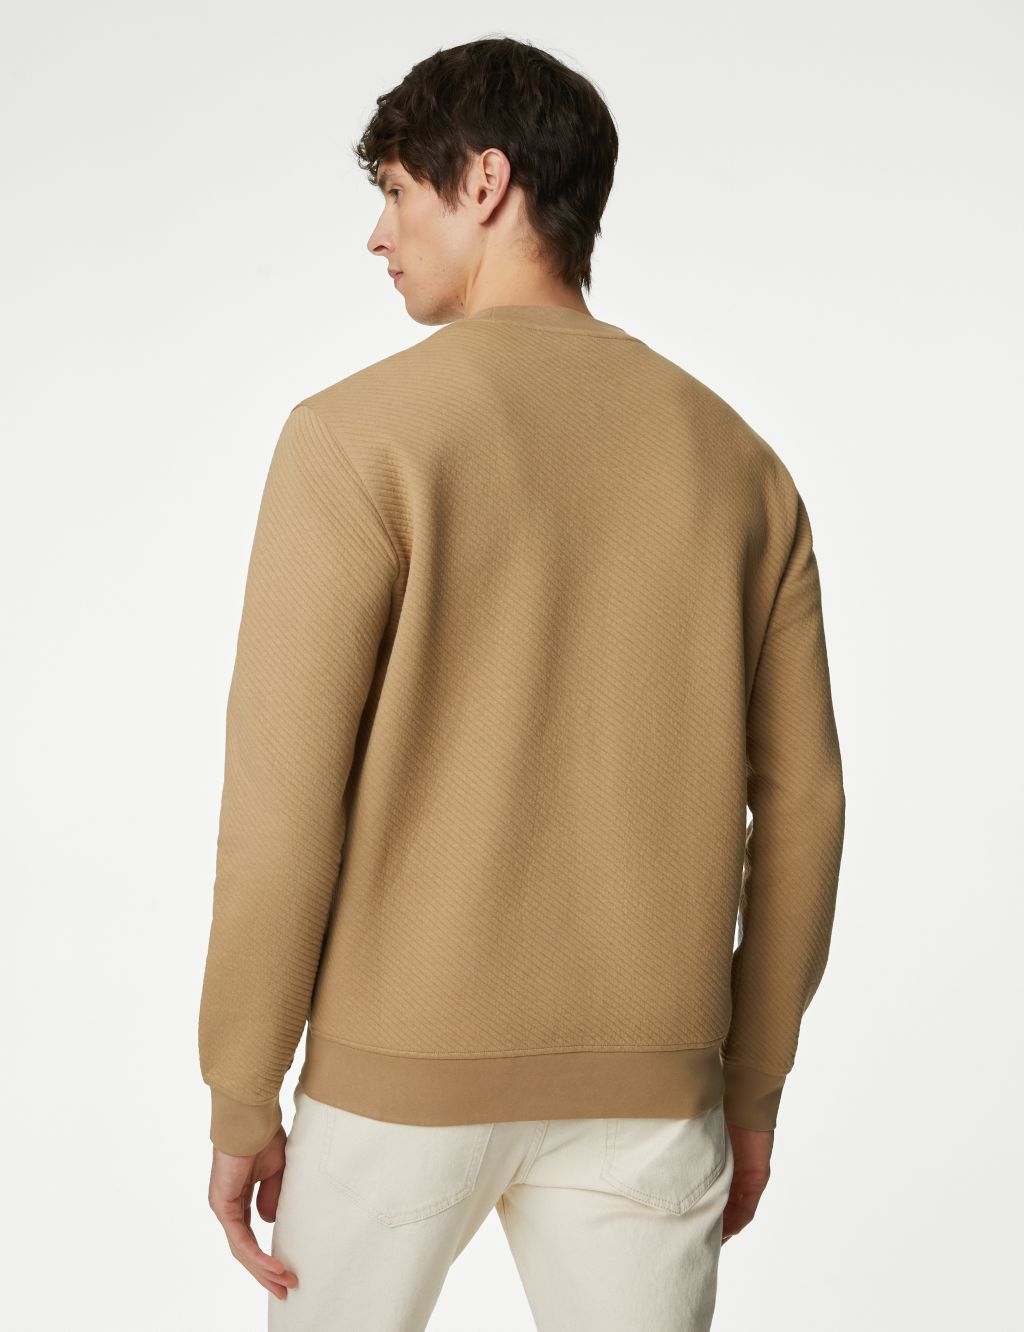 Cotton Rich Textured Crewneck Sweatshirt image 5